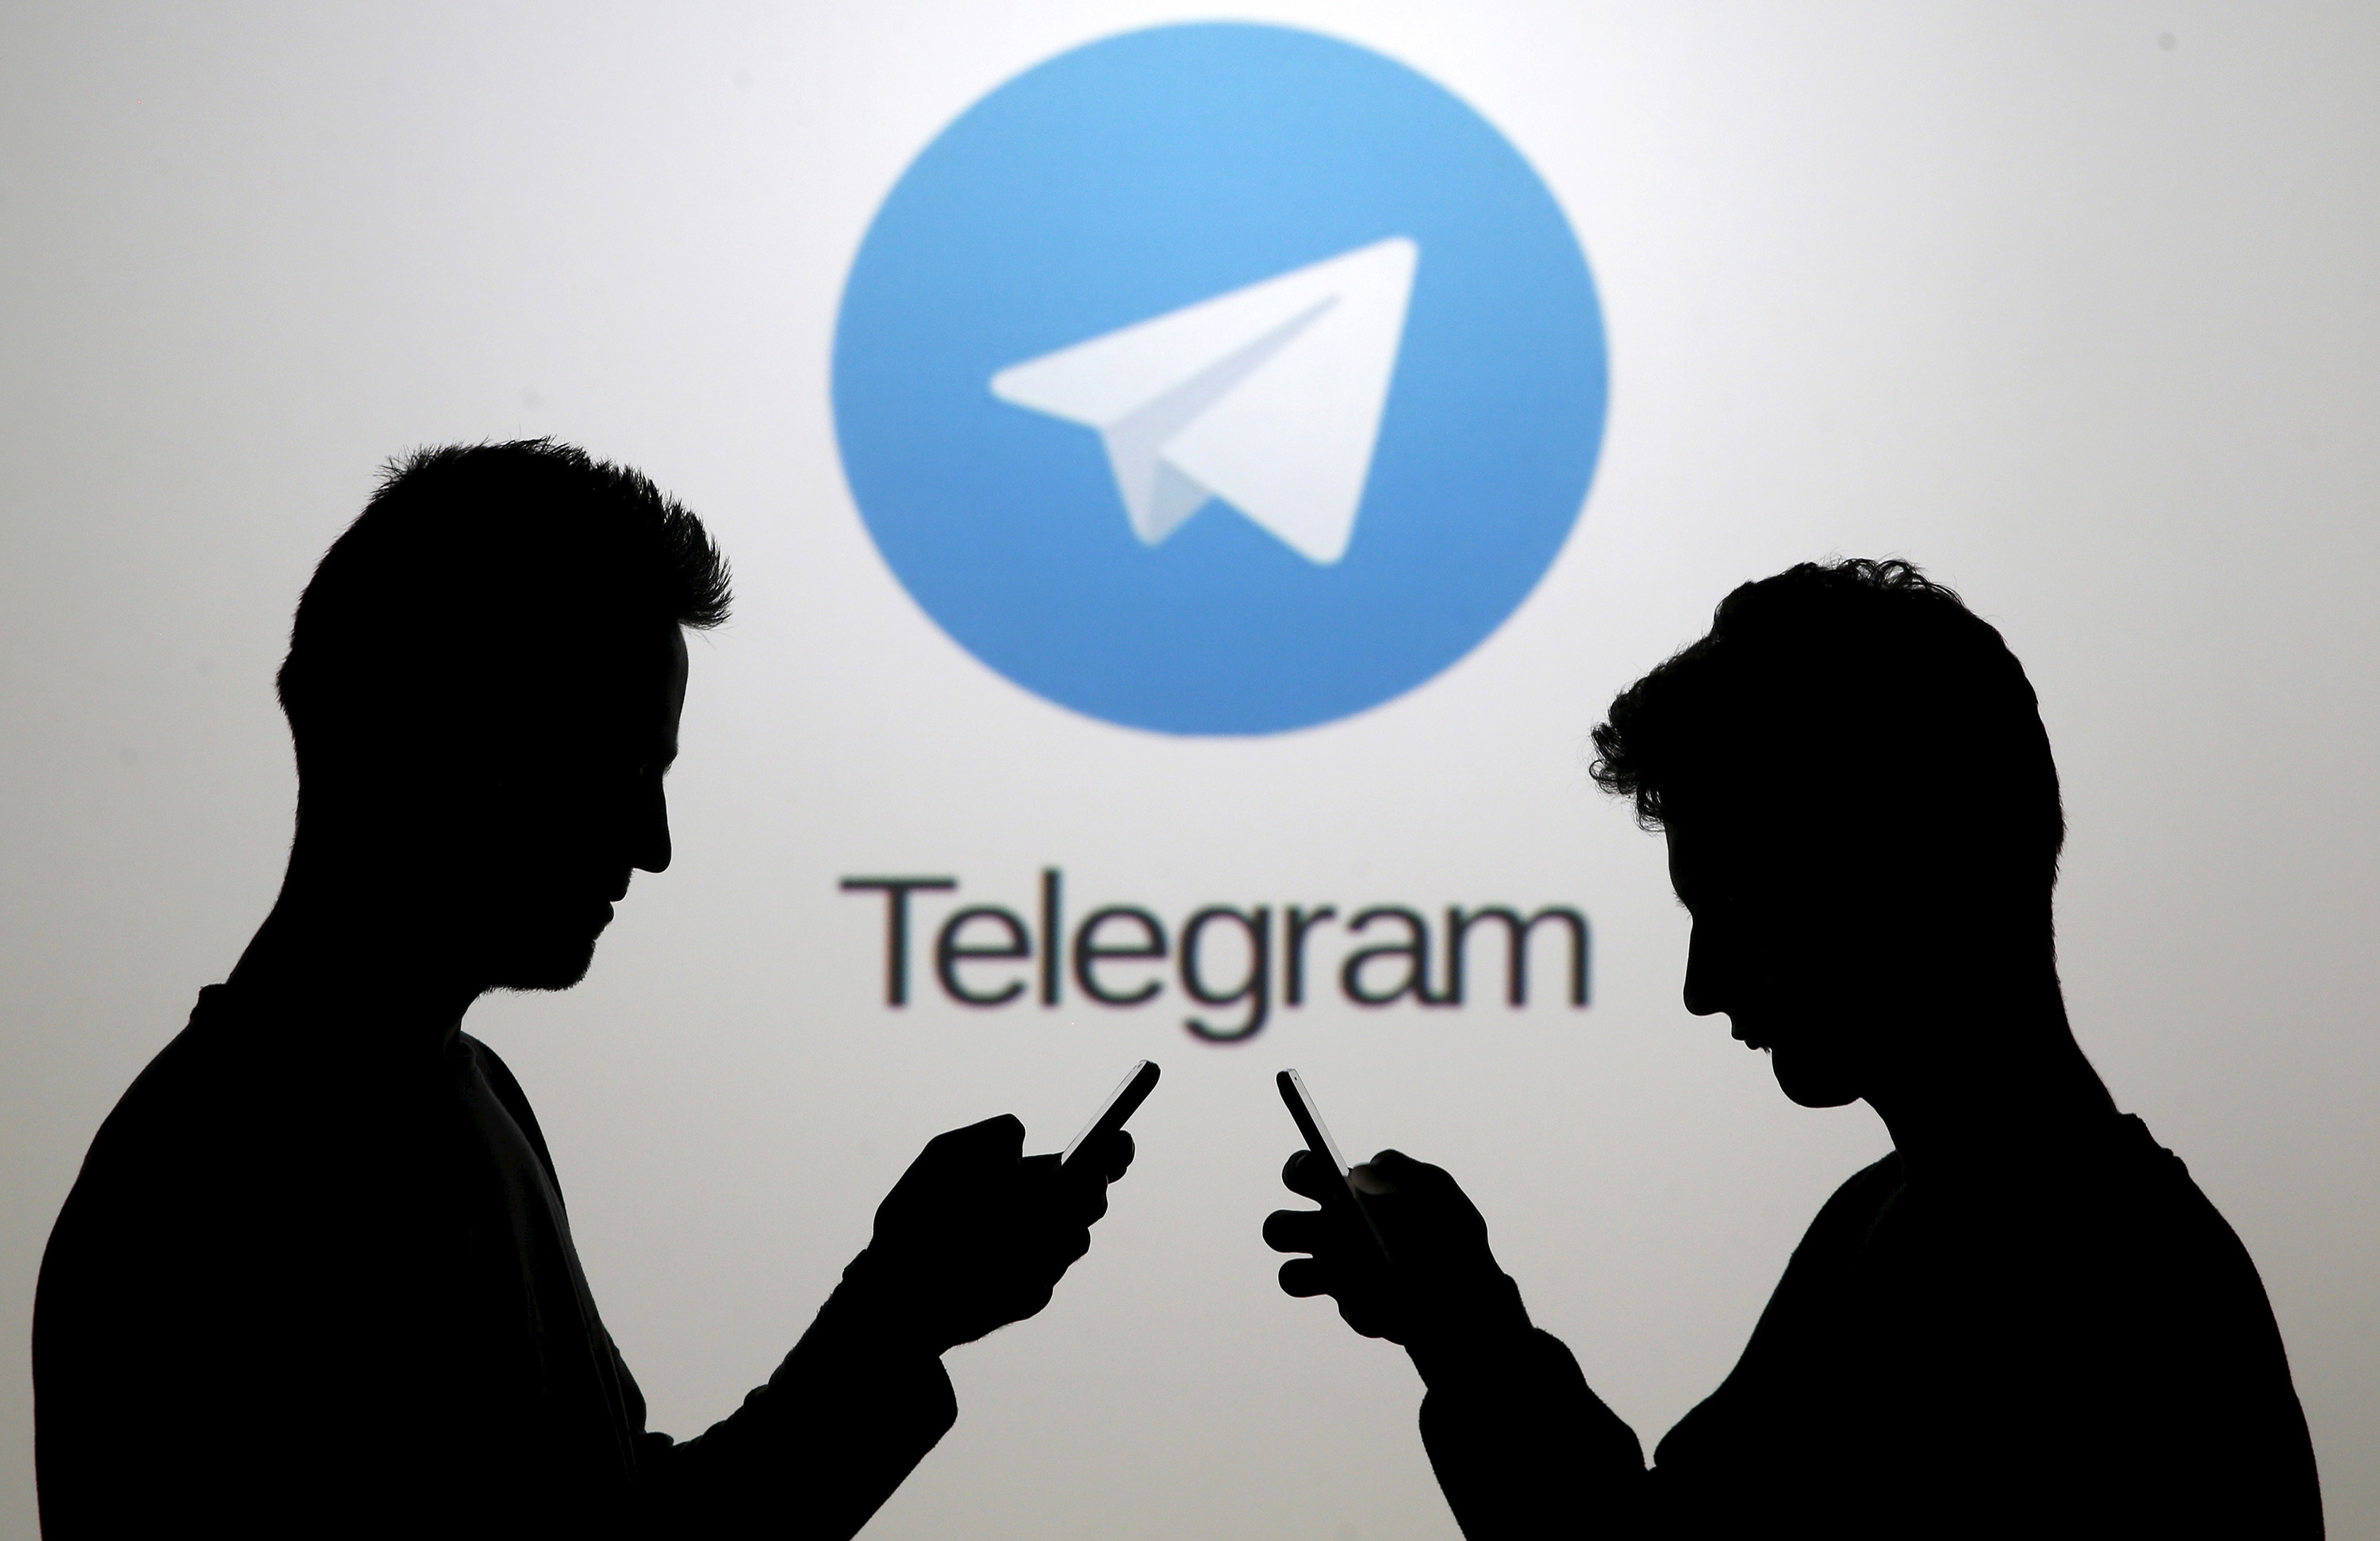 48 درصد تخلفات فضای مجازی مربوط به تلگرام است / چاره کار بستن تلگرام نیست